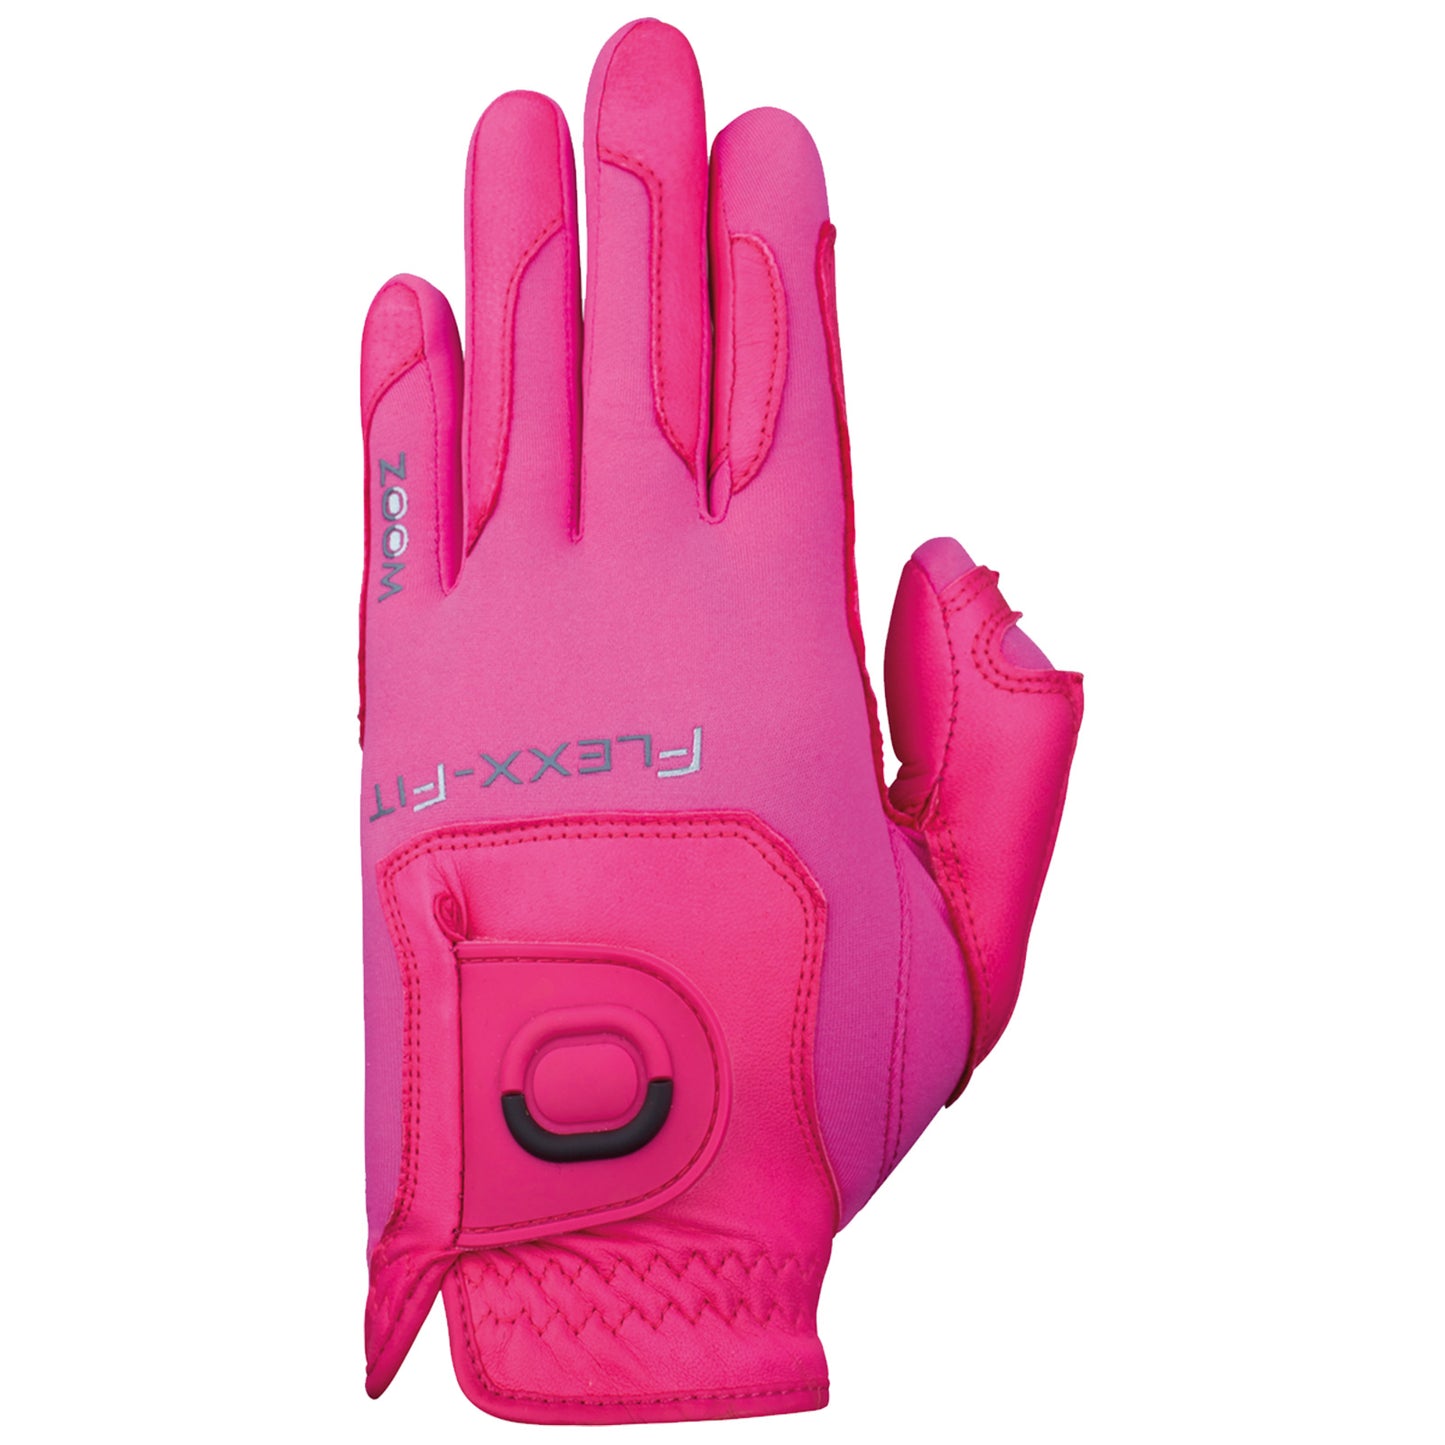 Zoom Ladies Left Hand Flexx Fit TOUR Golf Glove - One Size